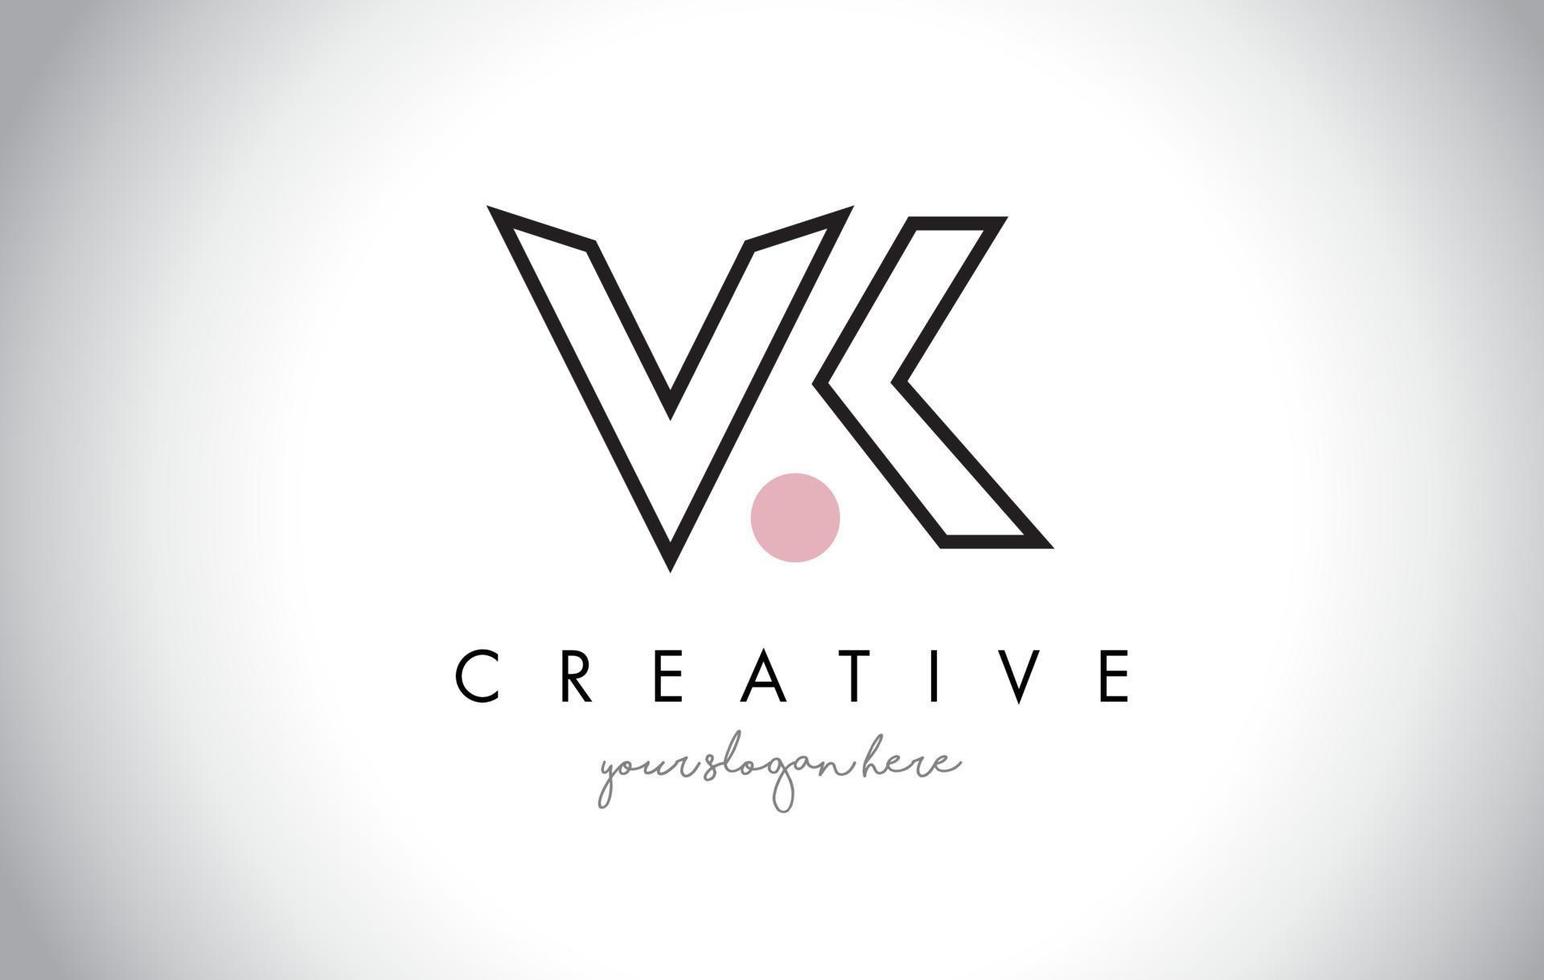 Diseño de logotipo de letra vk con tipografía creativa de moda moderna. vector